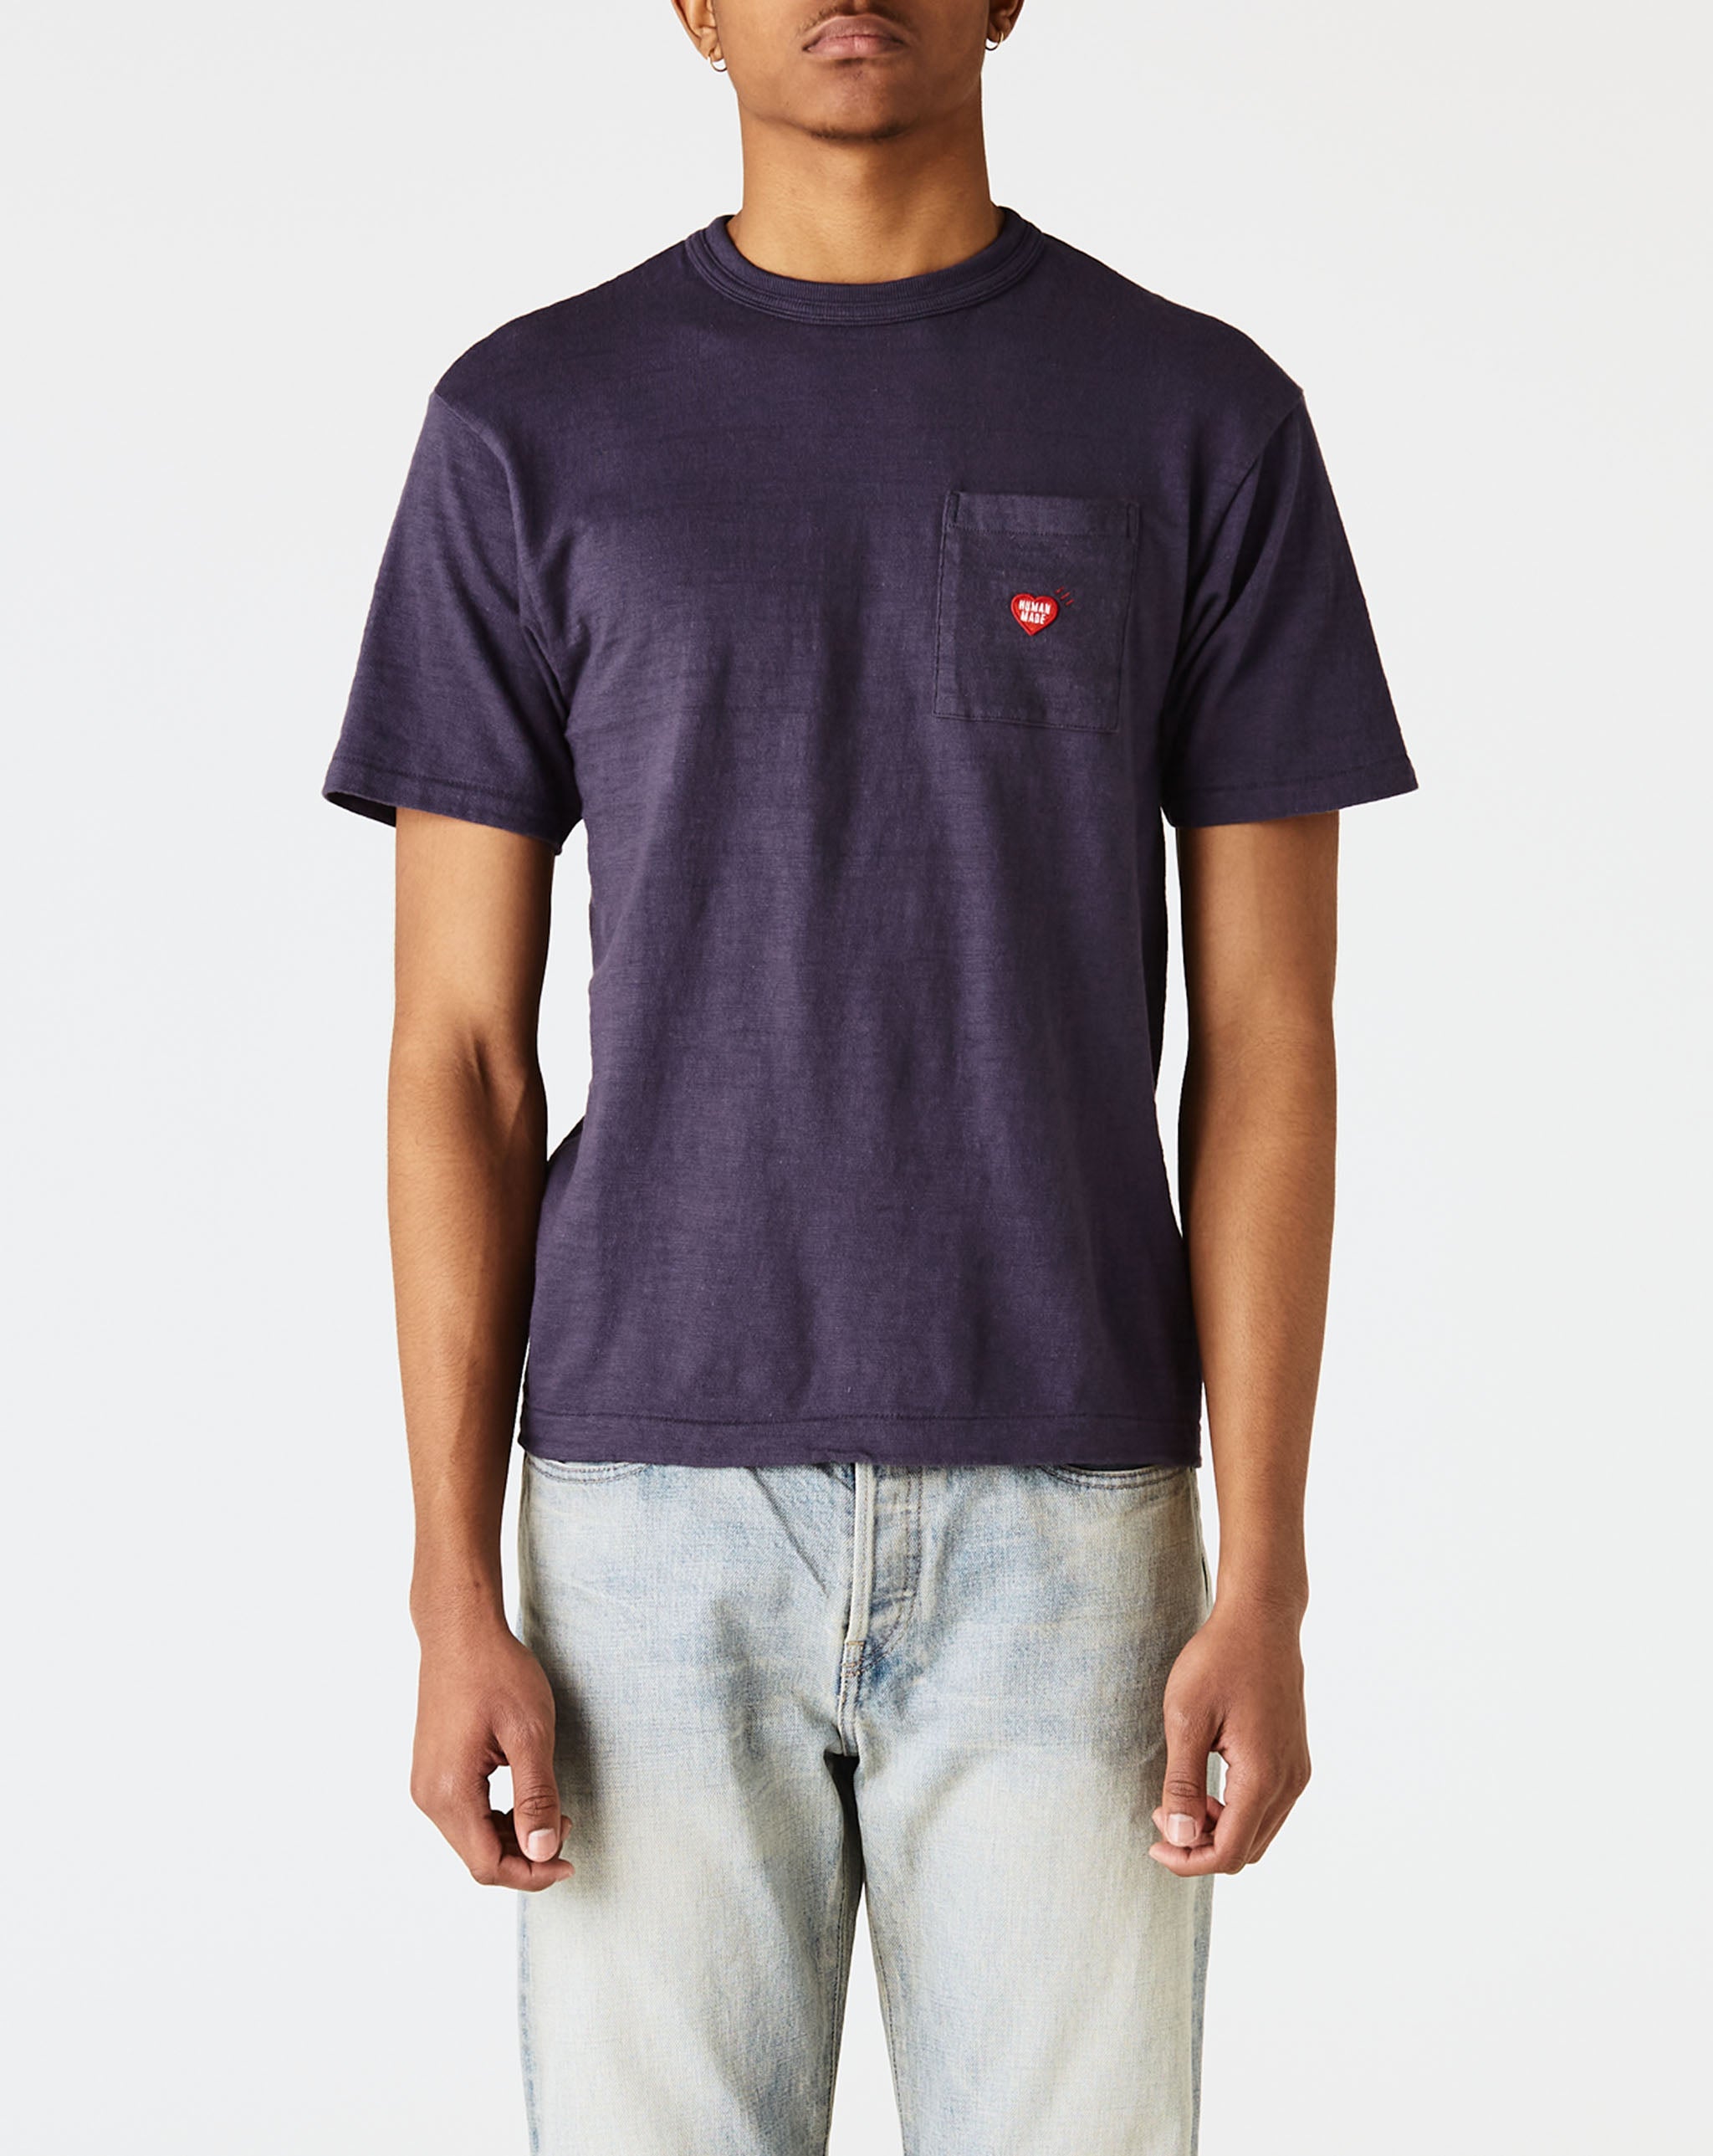 Human Made Pocket T-Shirt #2  - Cheap Cerbe Jordan outlet